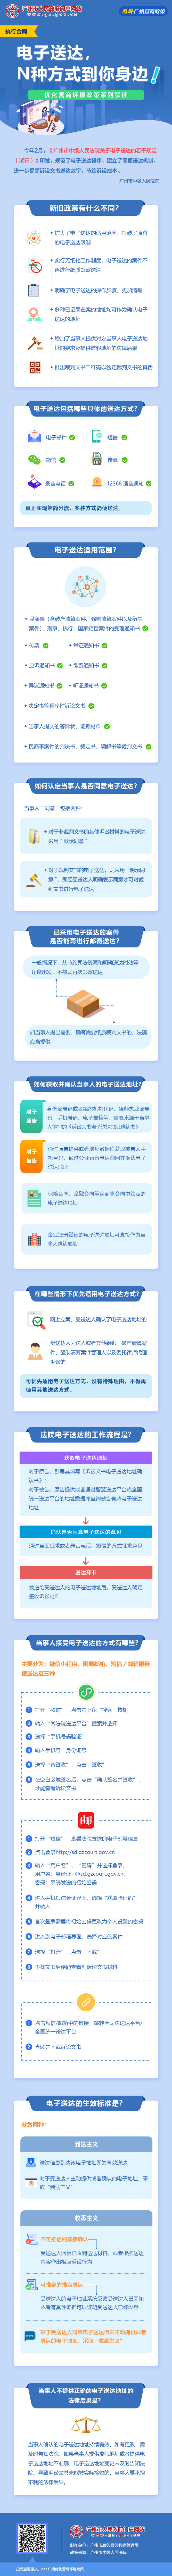 17广州市中级人民法院关于电子送达的若干规定.jpg